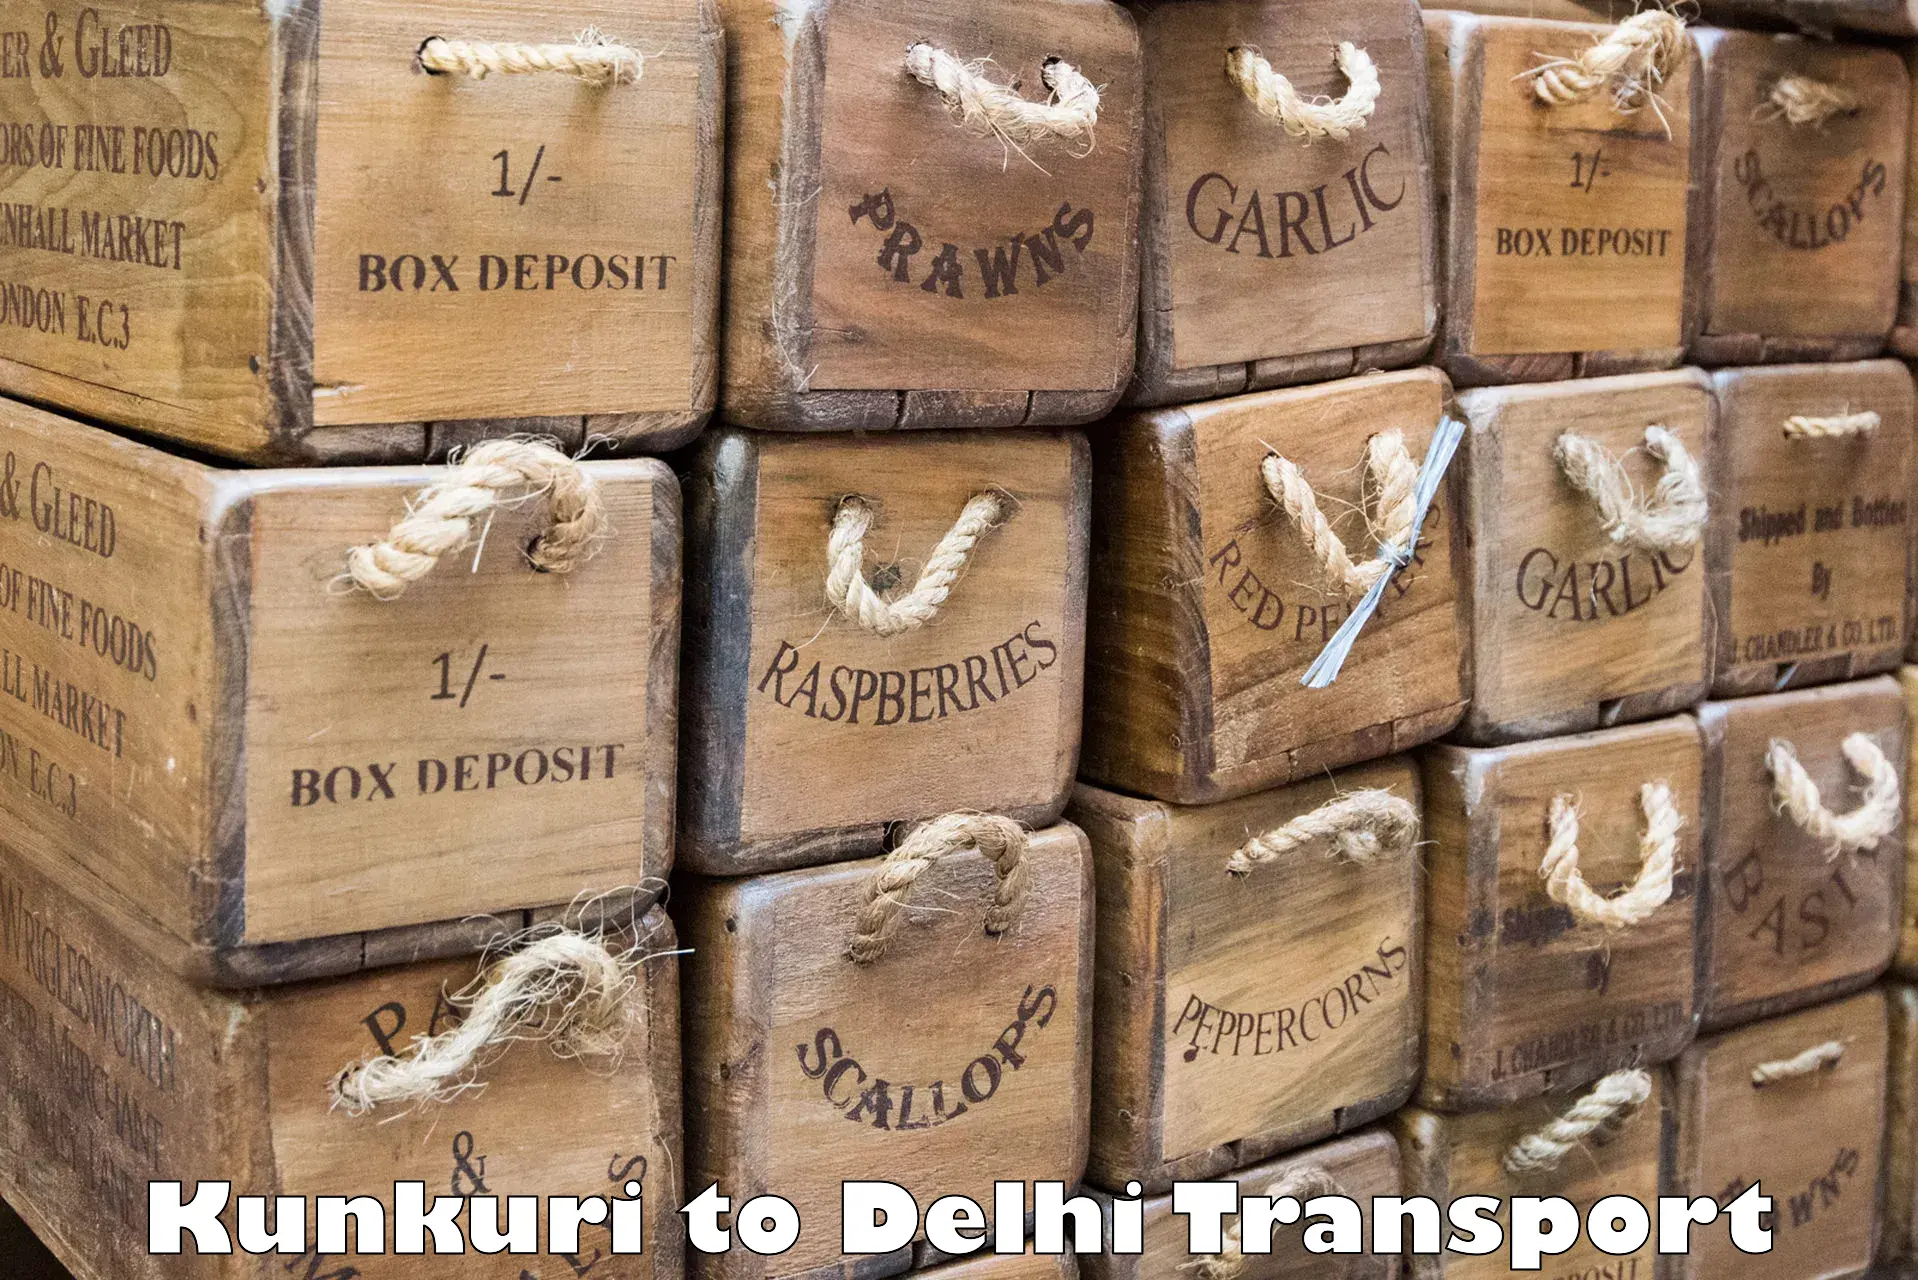 Air cargo transport services Kunkuri to NCR